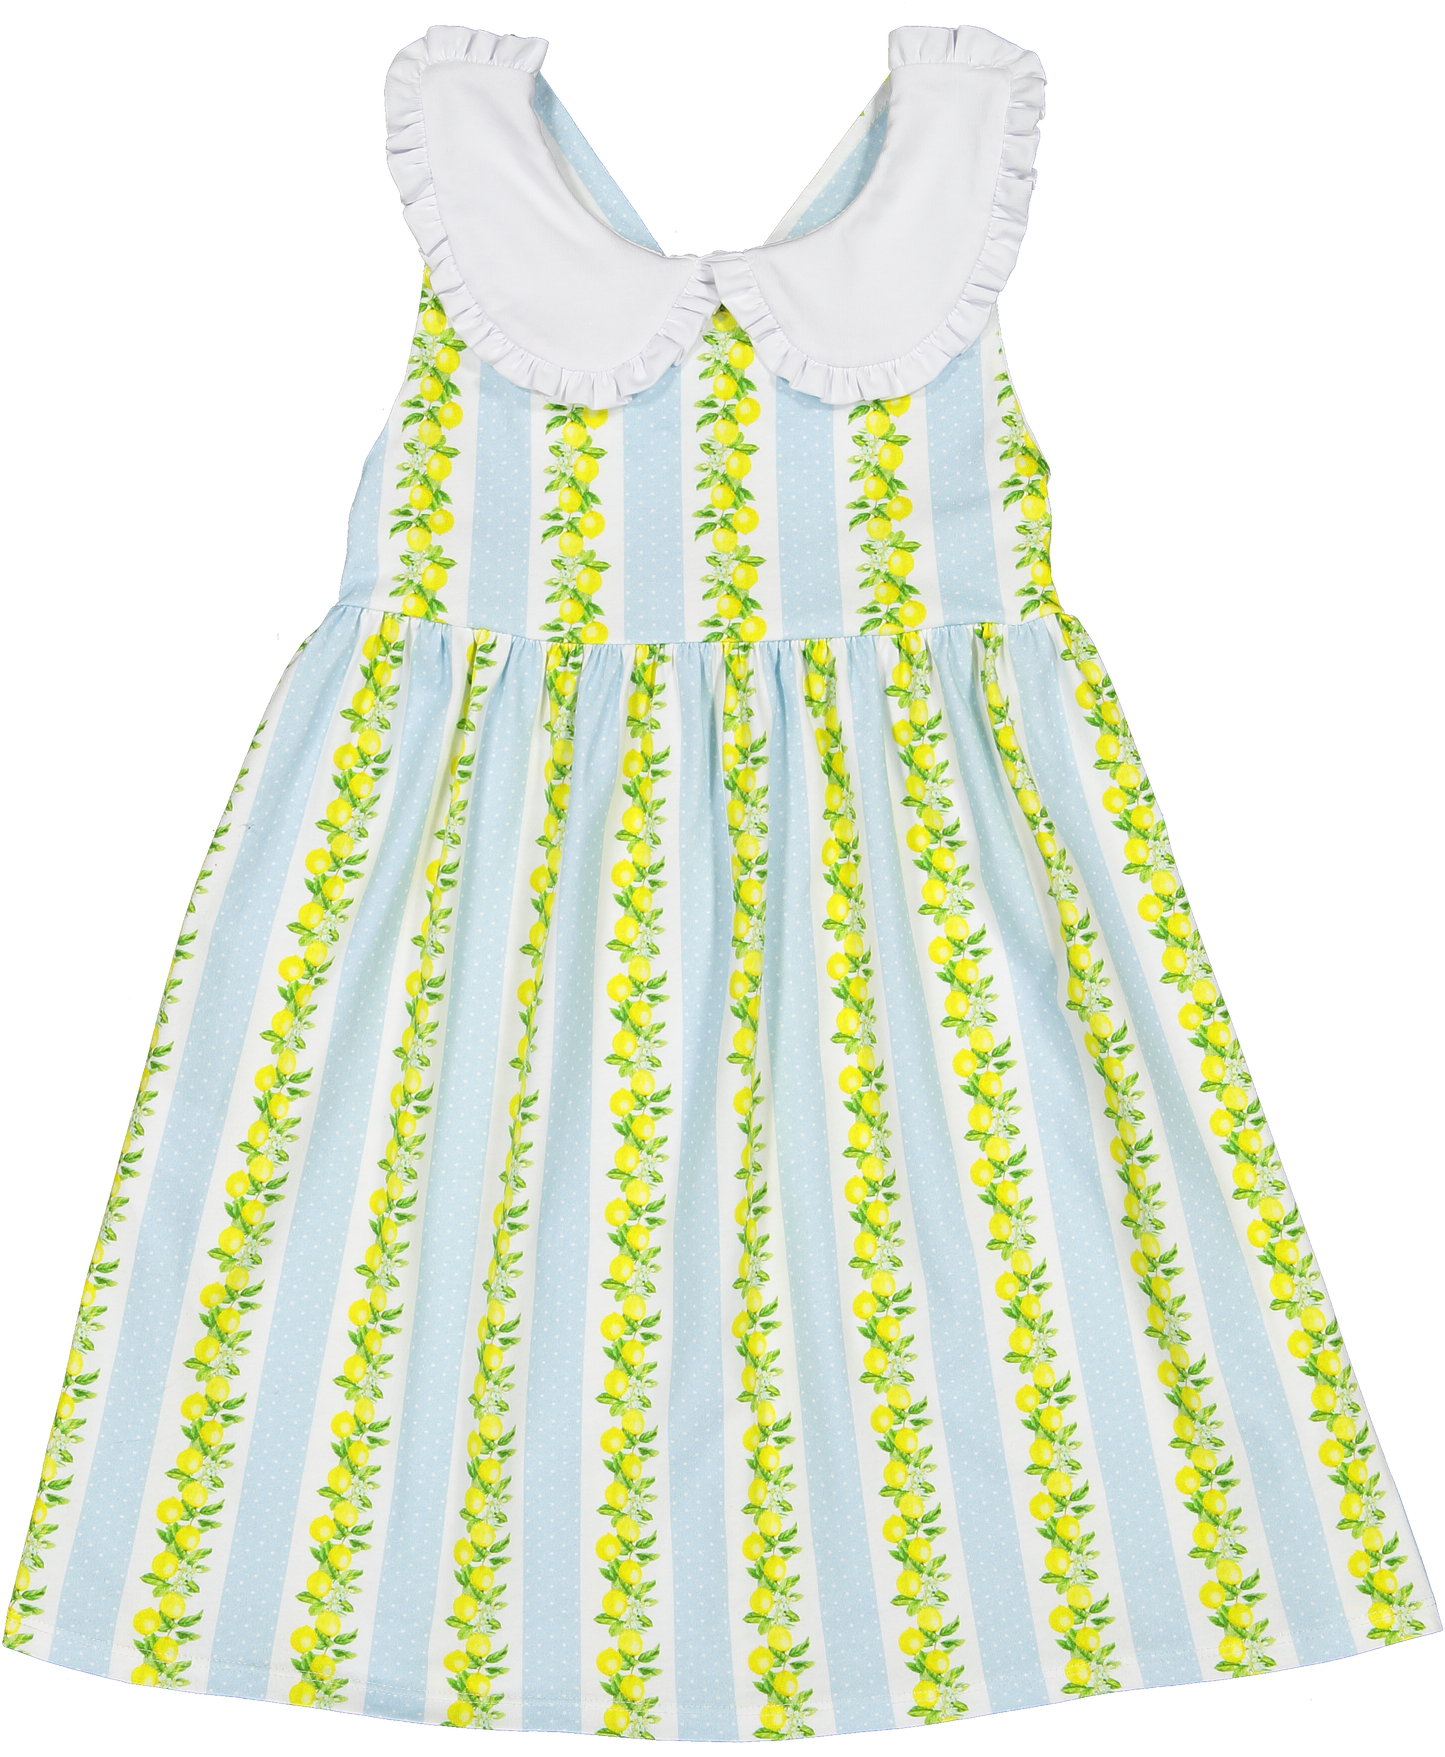 Sal and Lemon Tree A-Line Dress